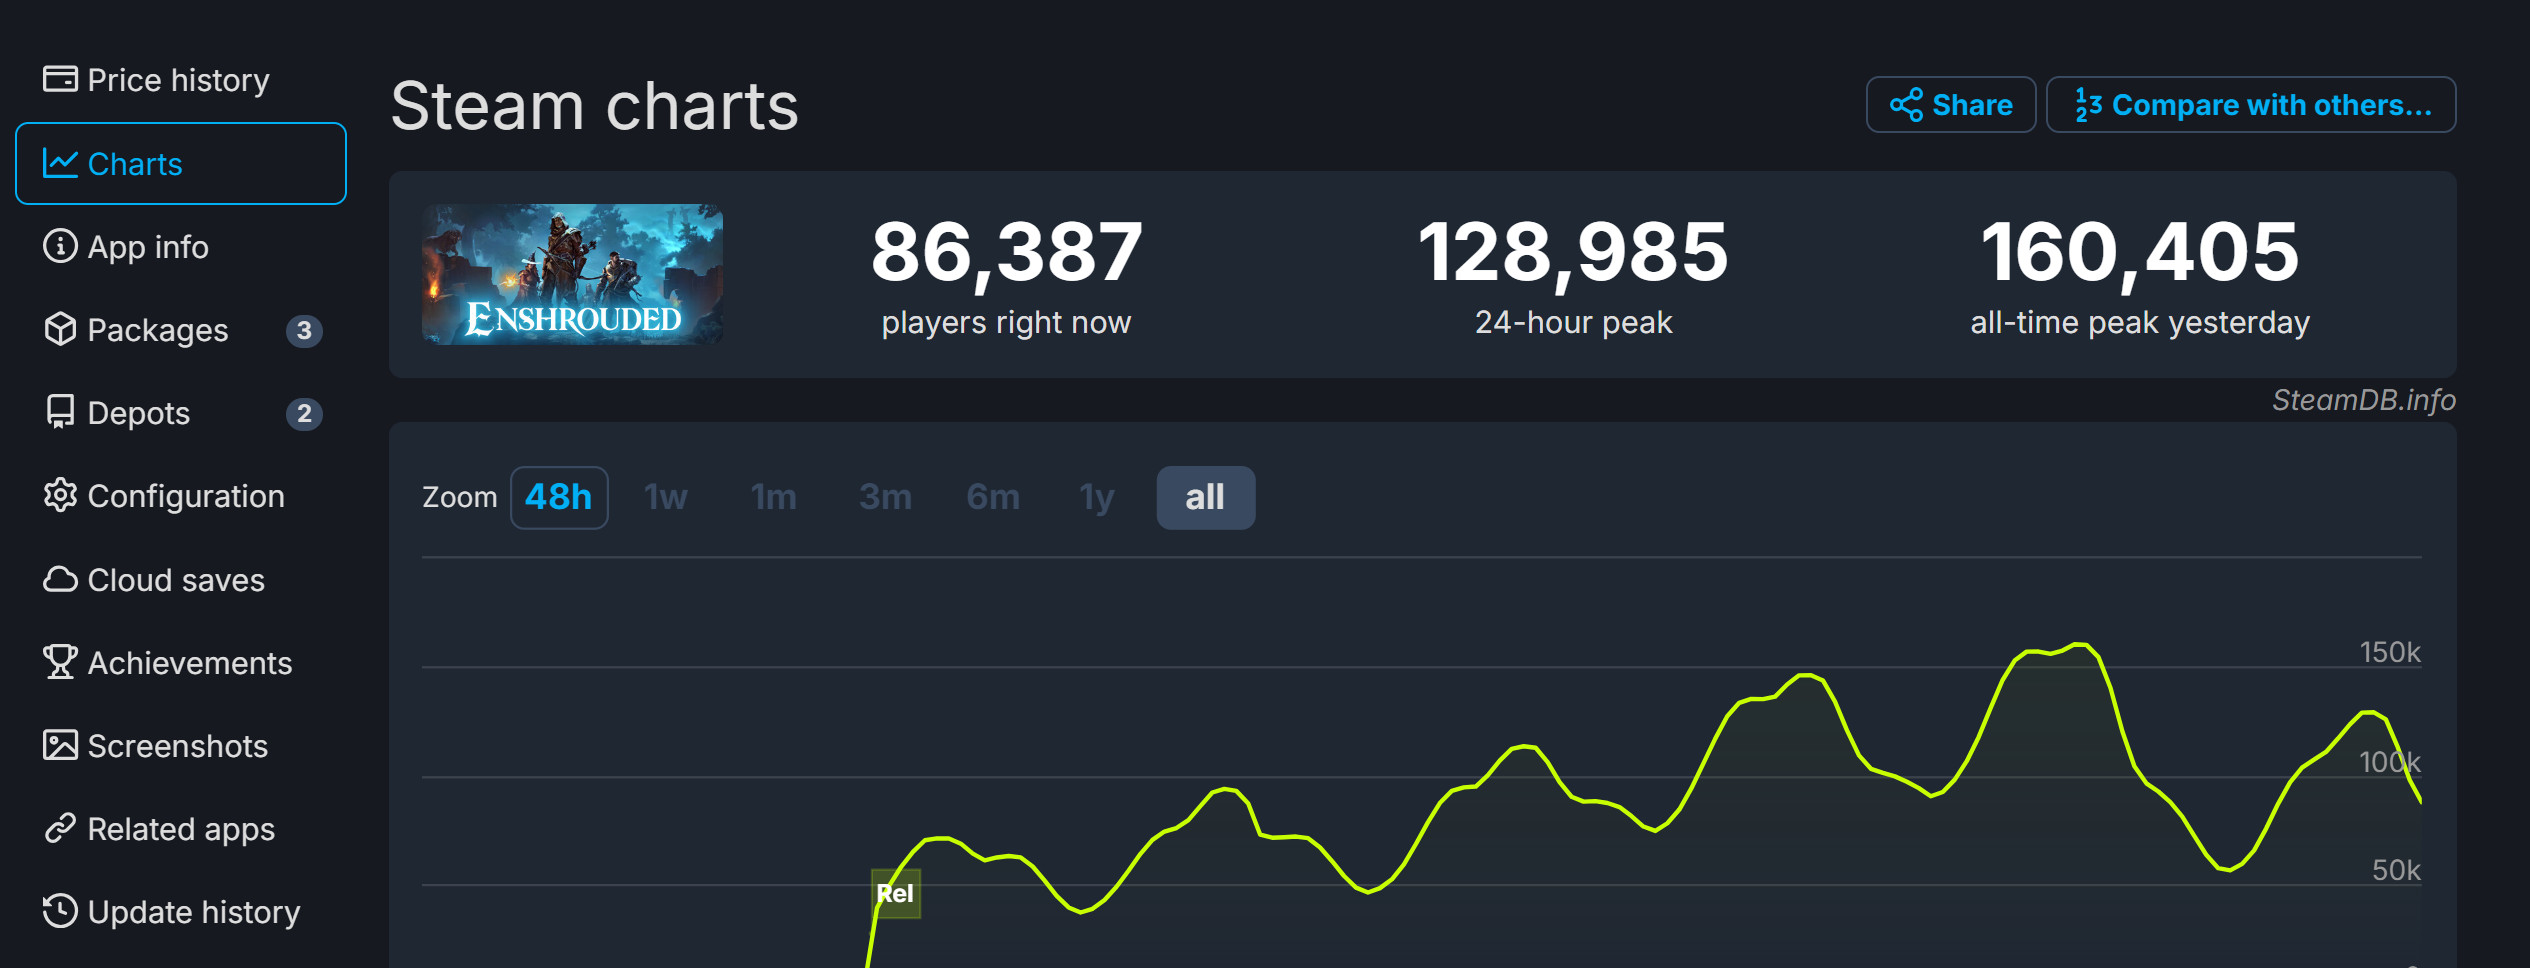 《雾锁王国》发售4天 总玩家现已突破100万